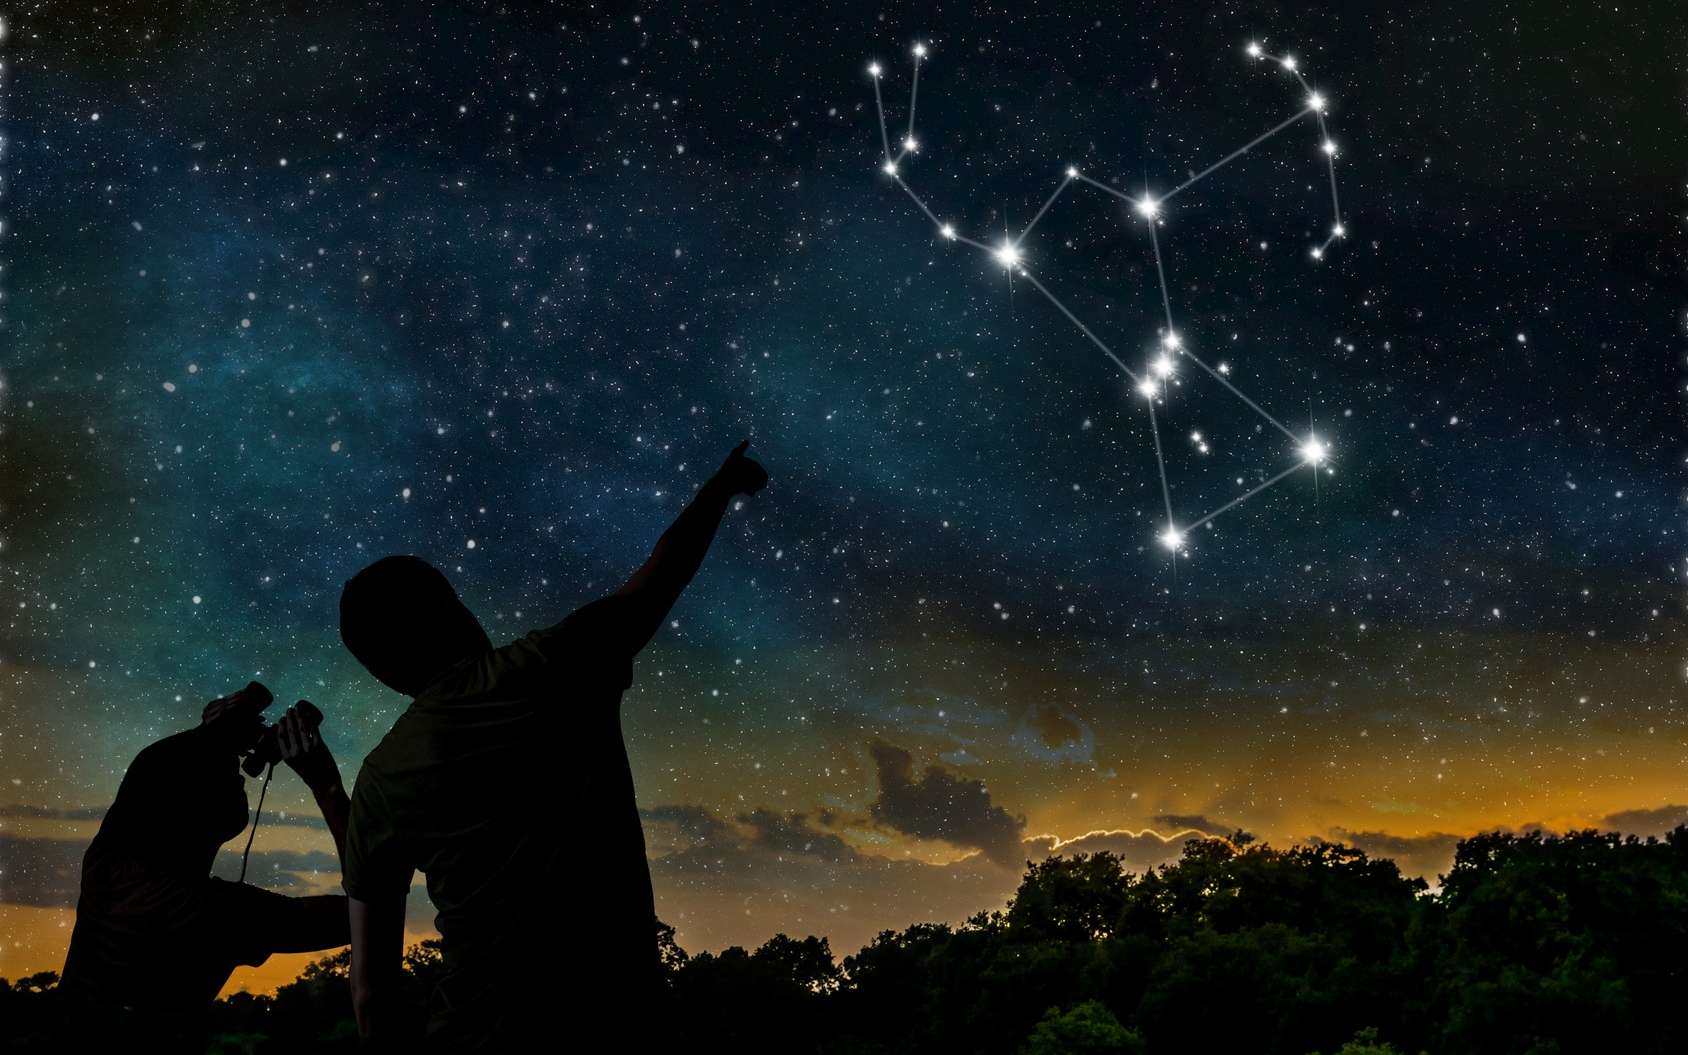 La constellation d’Orion illustrée dans le ciel. © vchalup, fotolia